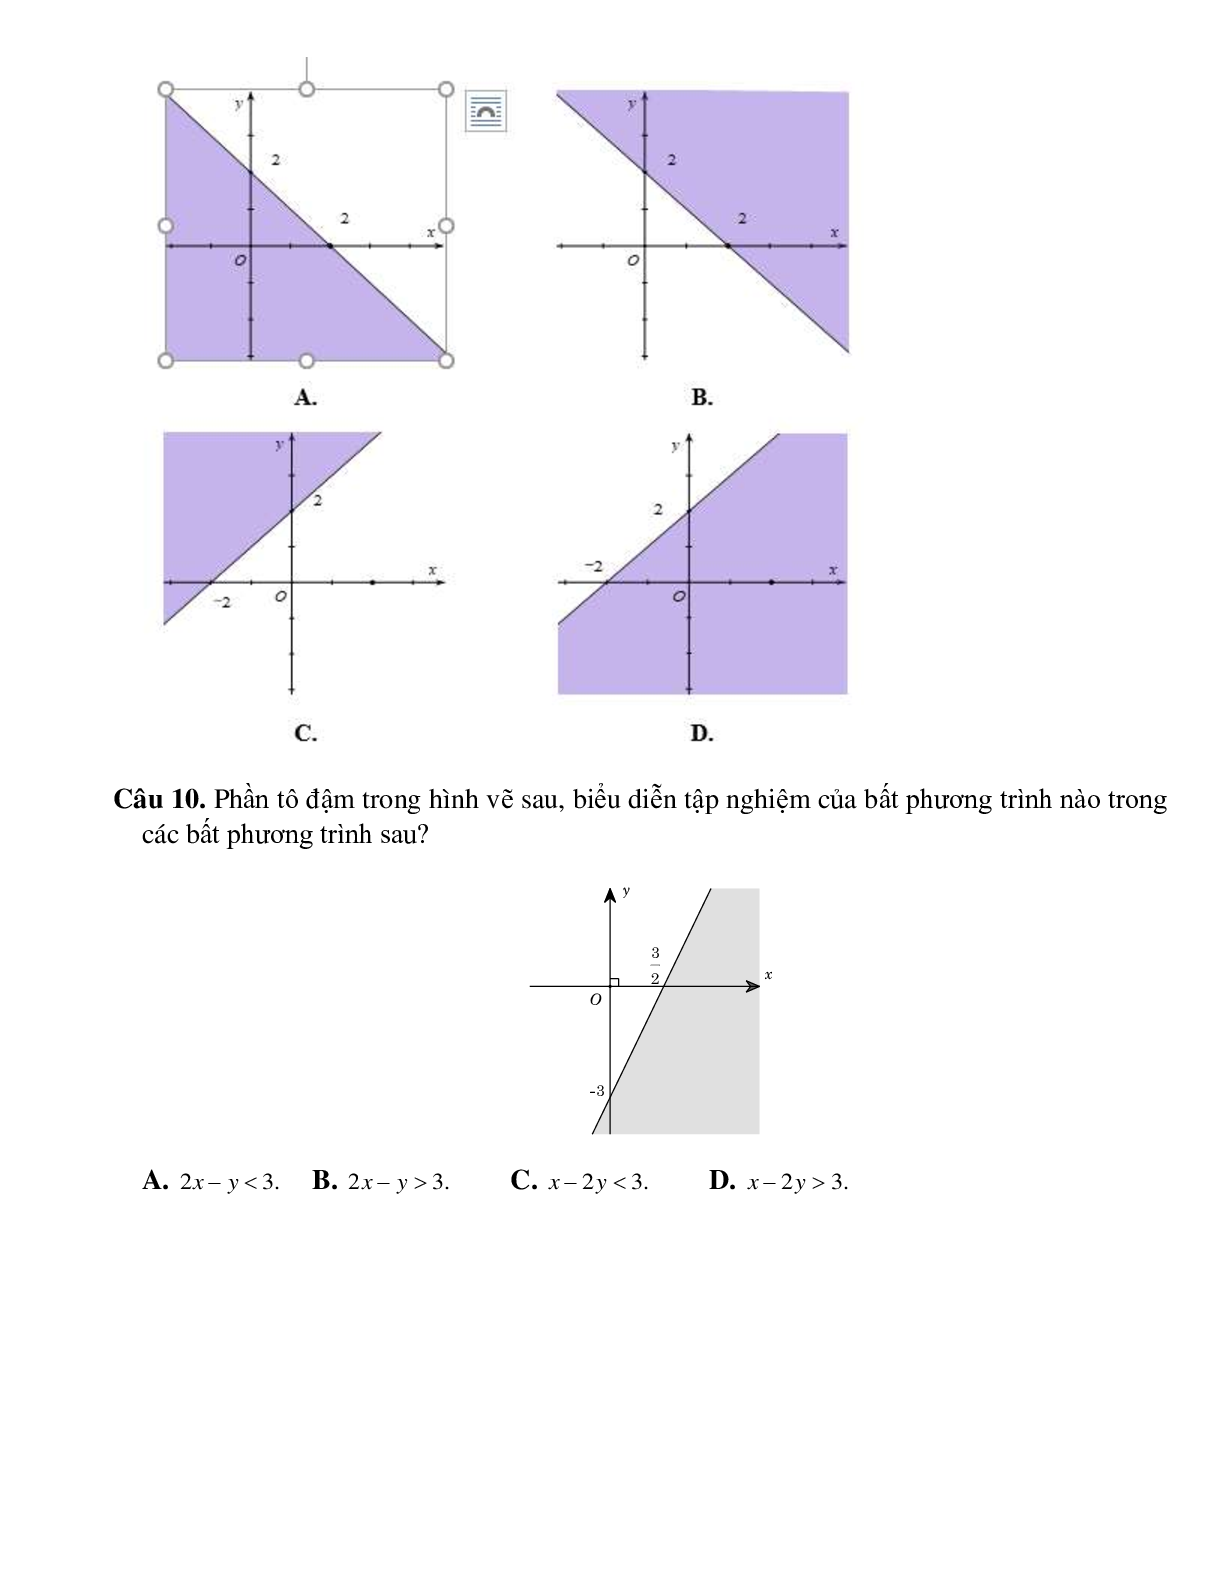 Bài tập bất phương trình bậc nhất hai ẩn Toán 10 (trang 3)